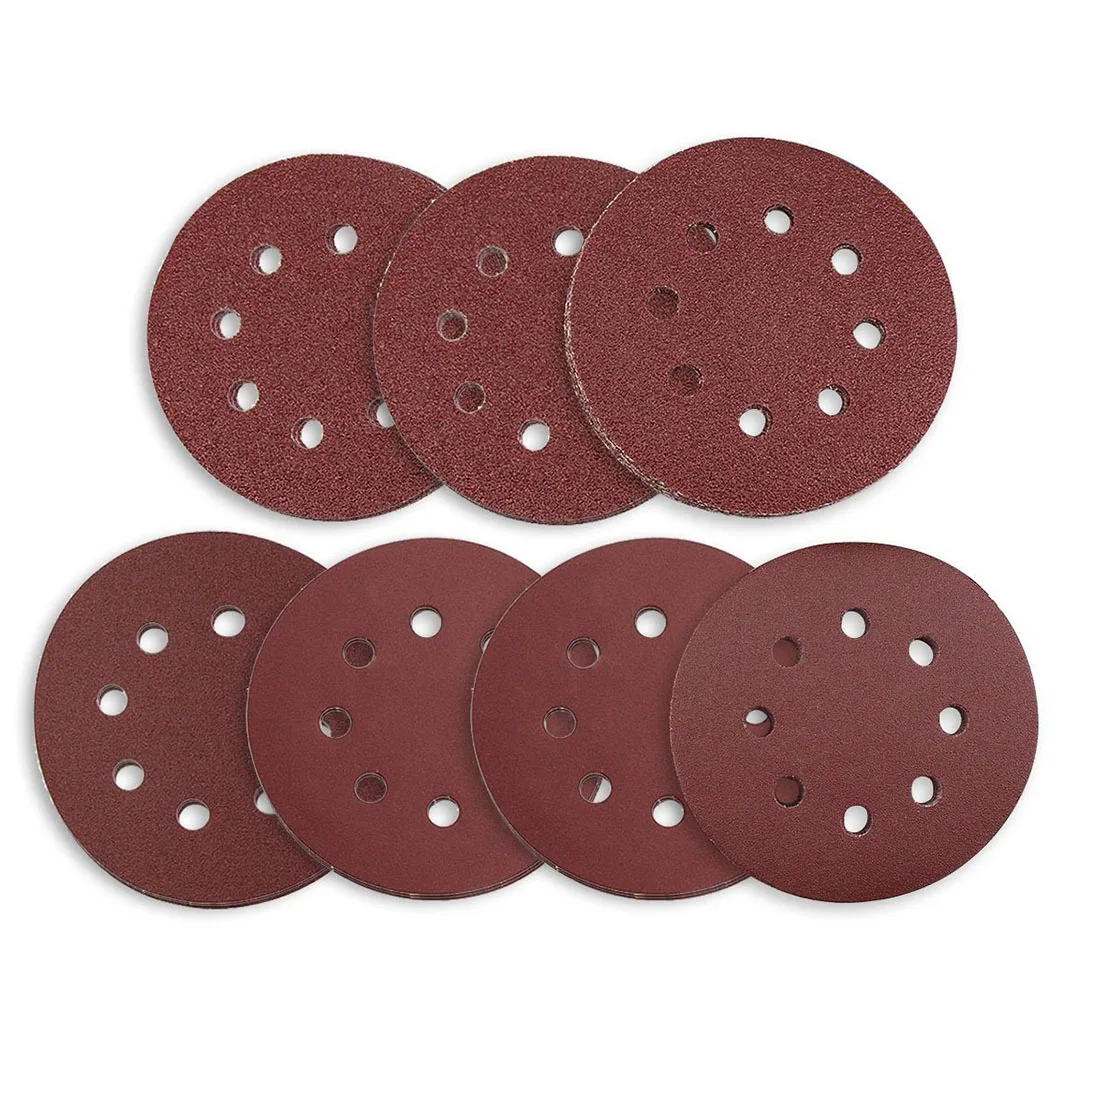 Шлифовальные диски 70 шт. 8 отверстий 5 дюймов наждачная бумага круговой беспыльной крюк и петля 60/80/120/180/240/320/400 Грит ассортимент